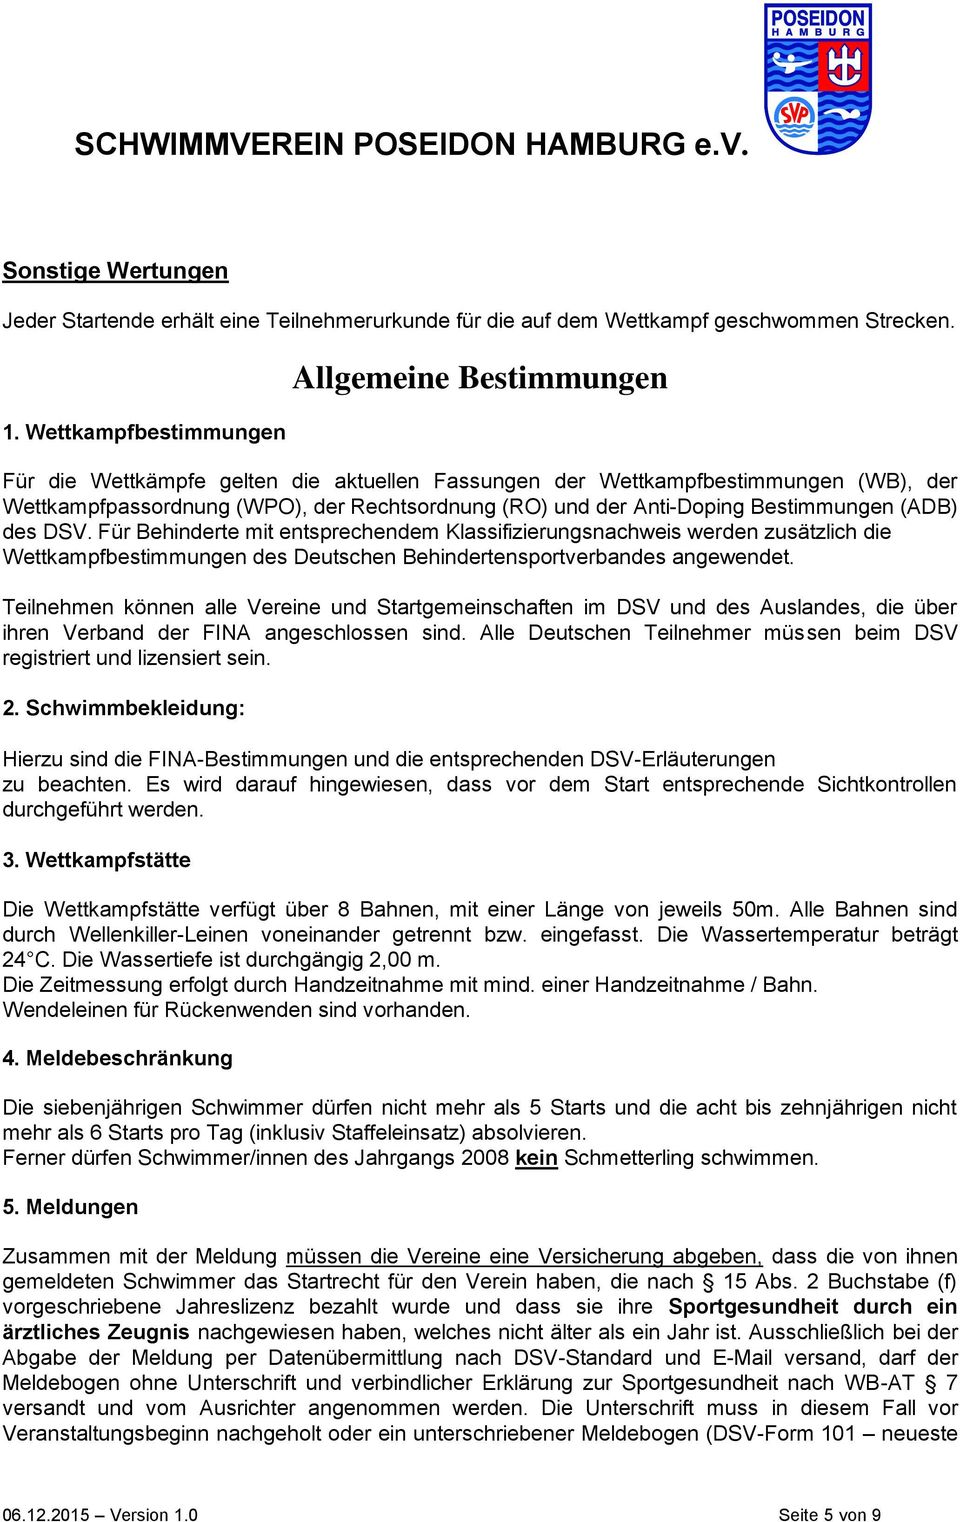 Anti-Doping Bestimmungen (ADB) des DSV. Für Behinderte mit entsprechendem Klassifizierungsnachweis werden zusätzlich die Wettkampfbestimmungen des Deutschen Behindertensportverbandes angewendet.